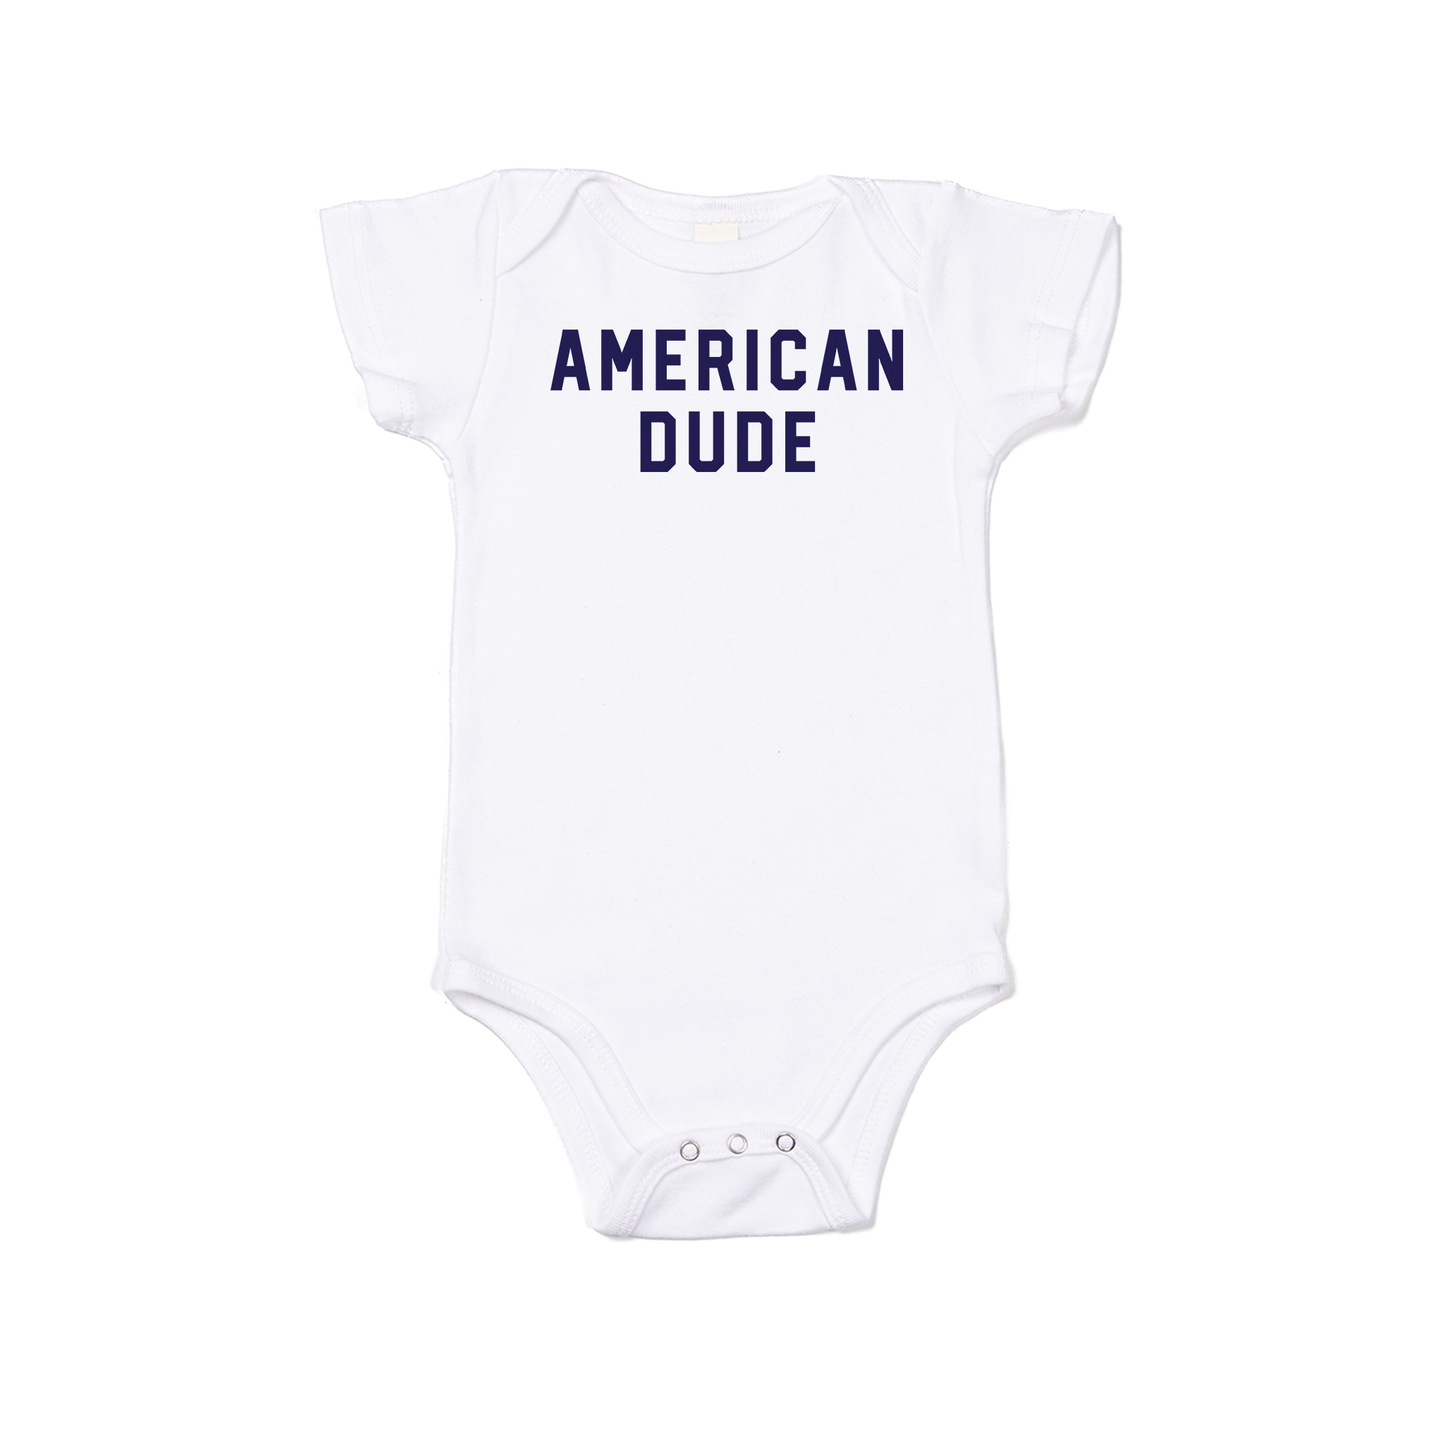 American Dude (Navy) - Bodysuit (White, Short Sleeve)